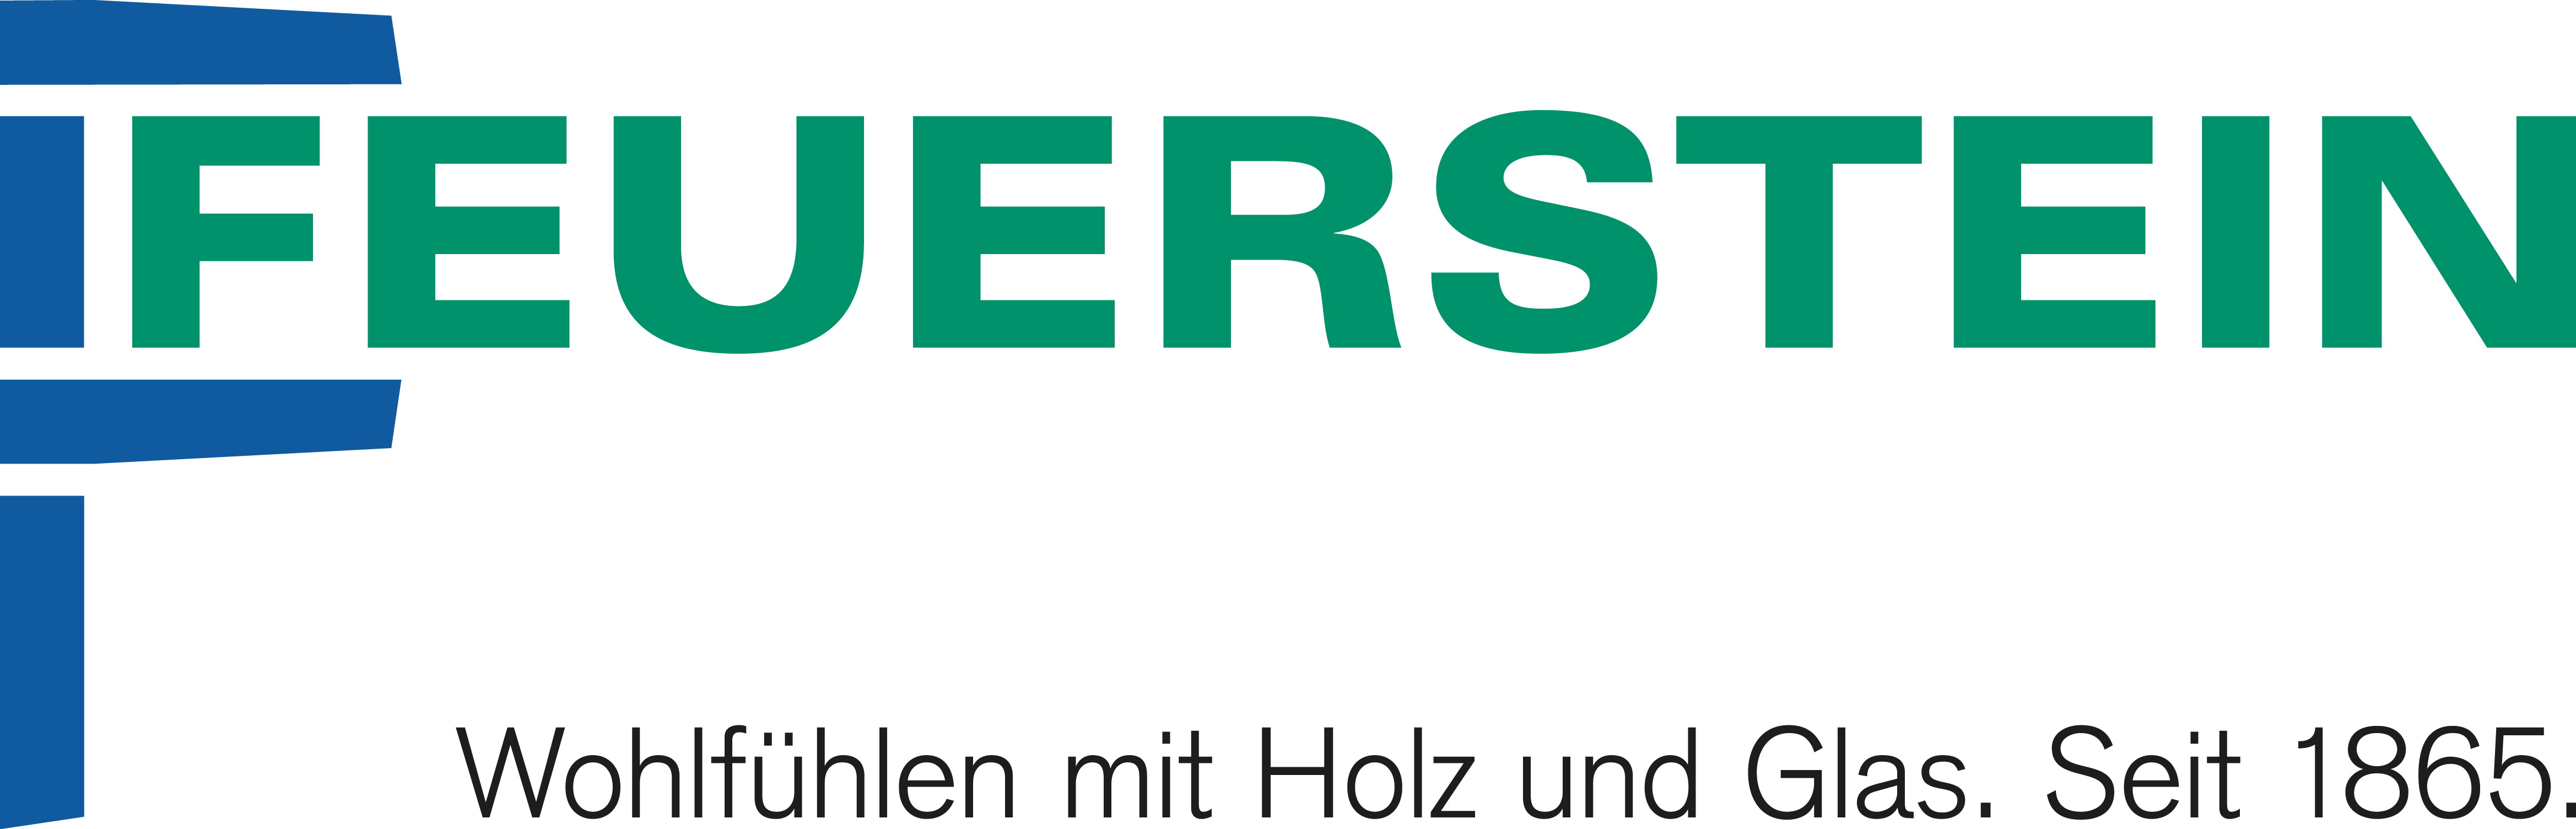 Josef Feuerstein GmbH & Co KG